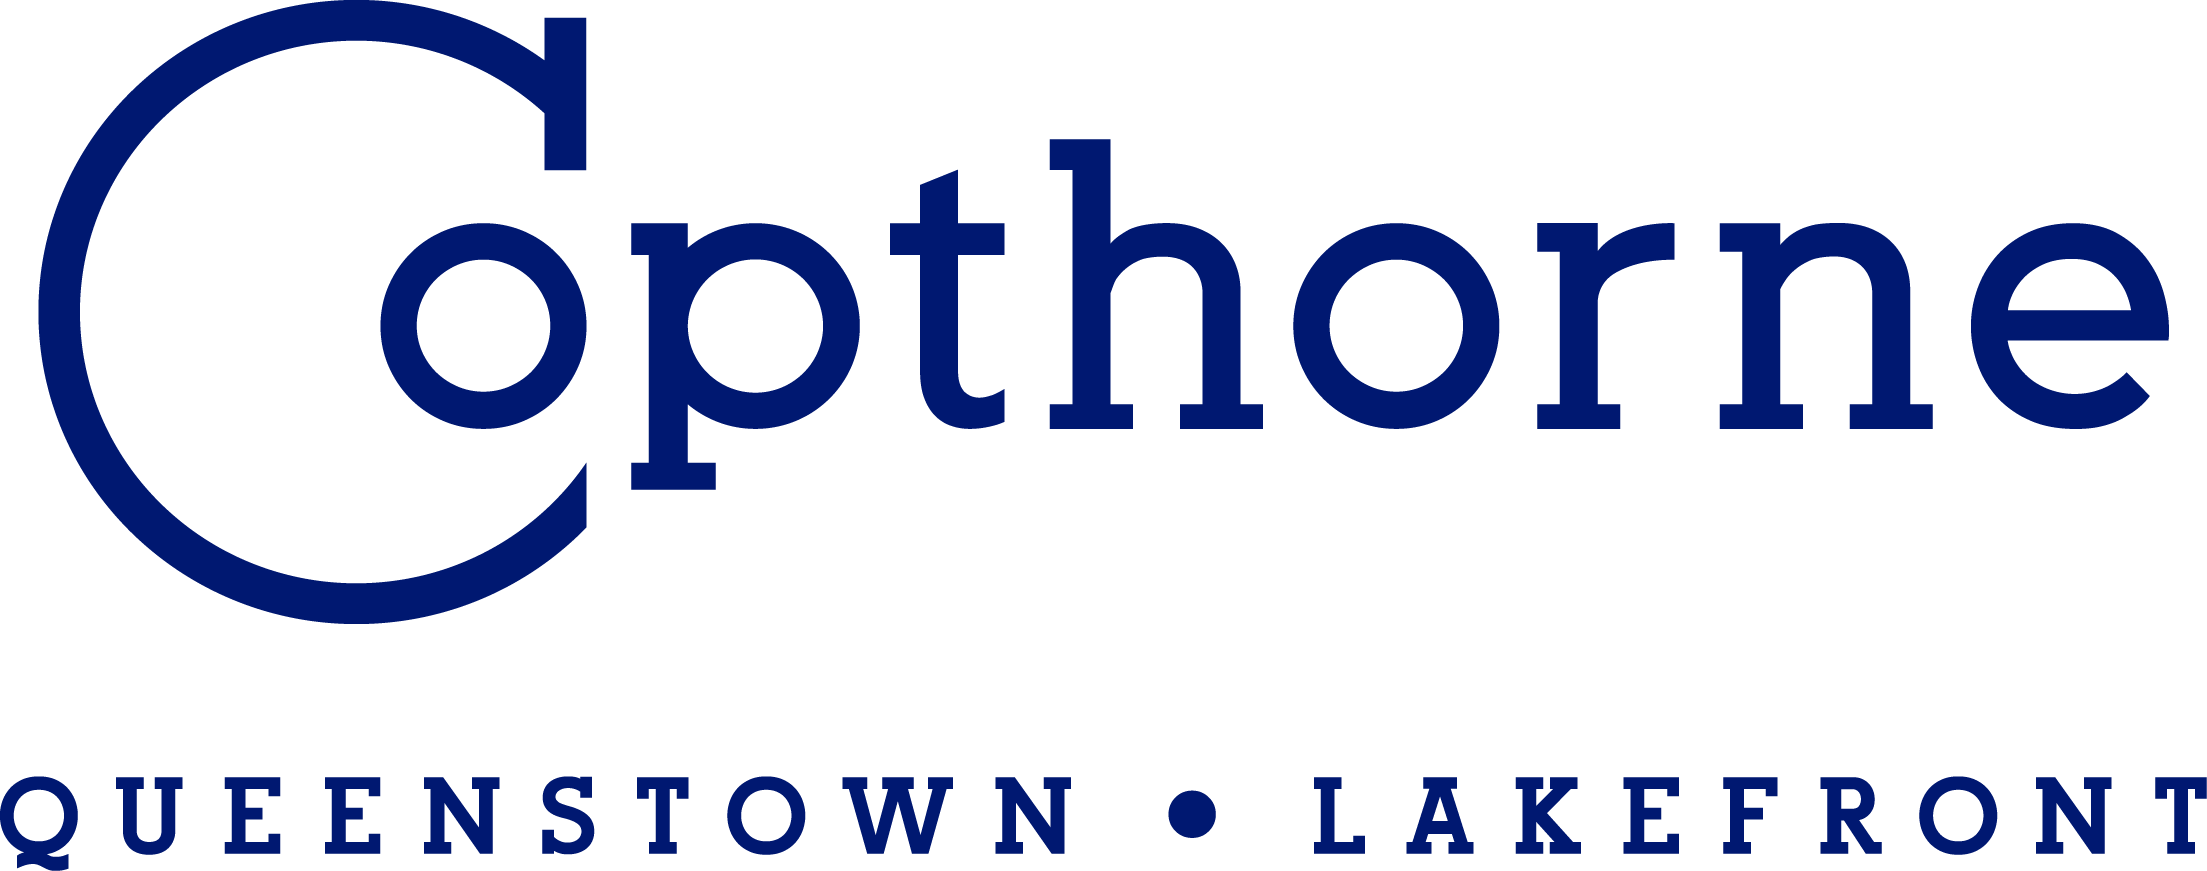 
Copthorne Hotel & Resort Queenstown Lakefront